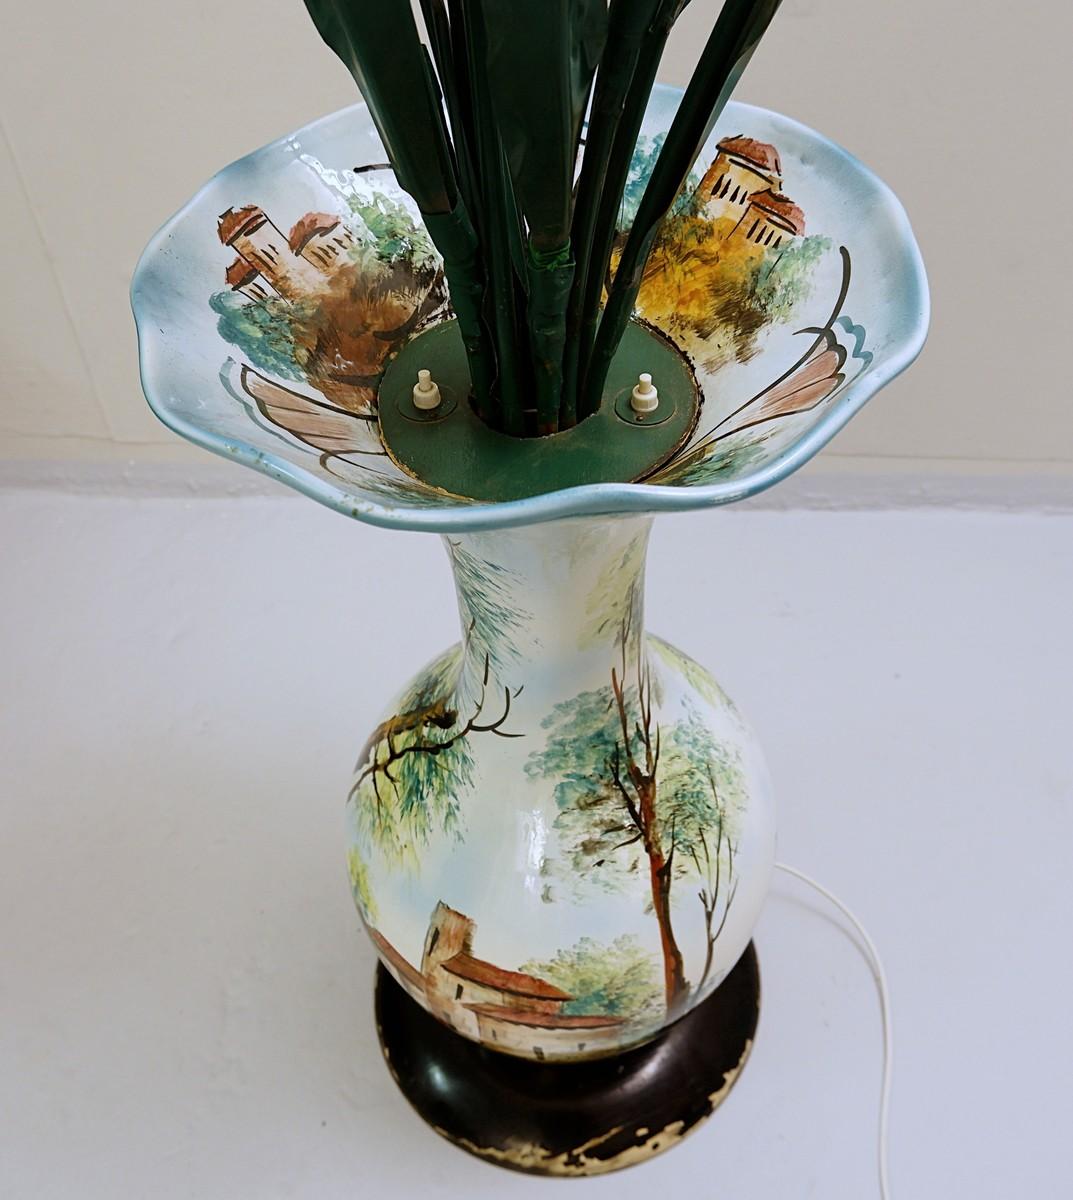 Italian ceramic vase flowers floor lamp.